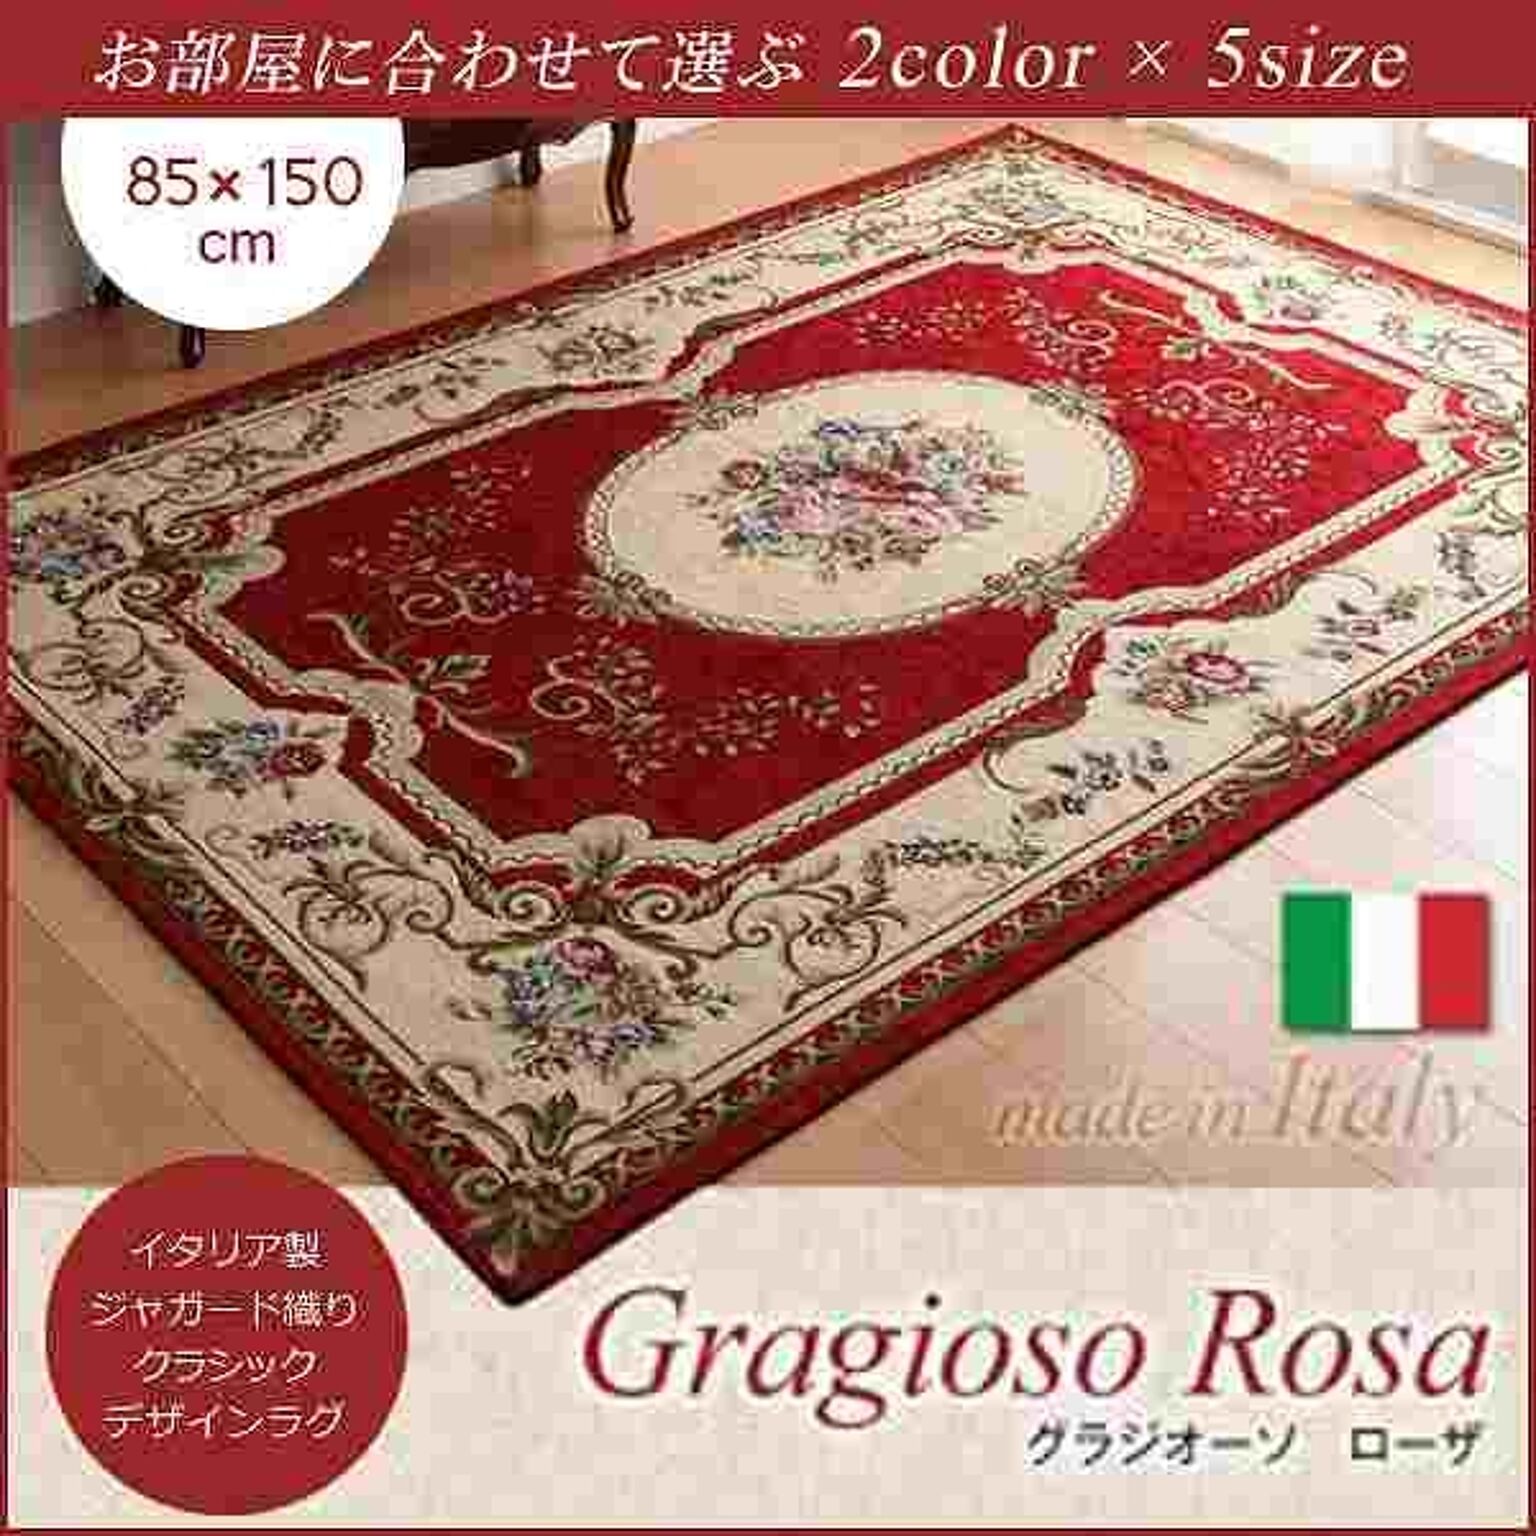 イタリア製ジャガード織りラグ Gragioso Rosa 85×150cm レッド